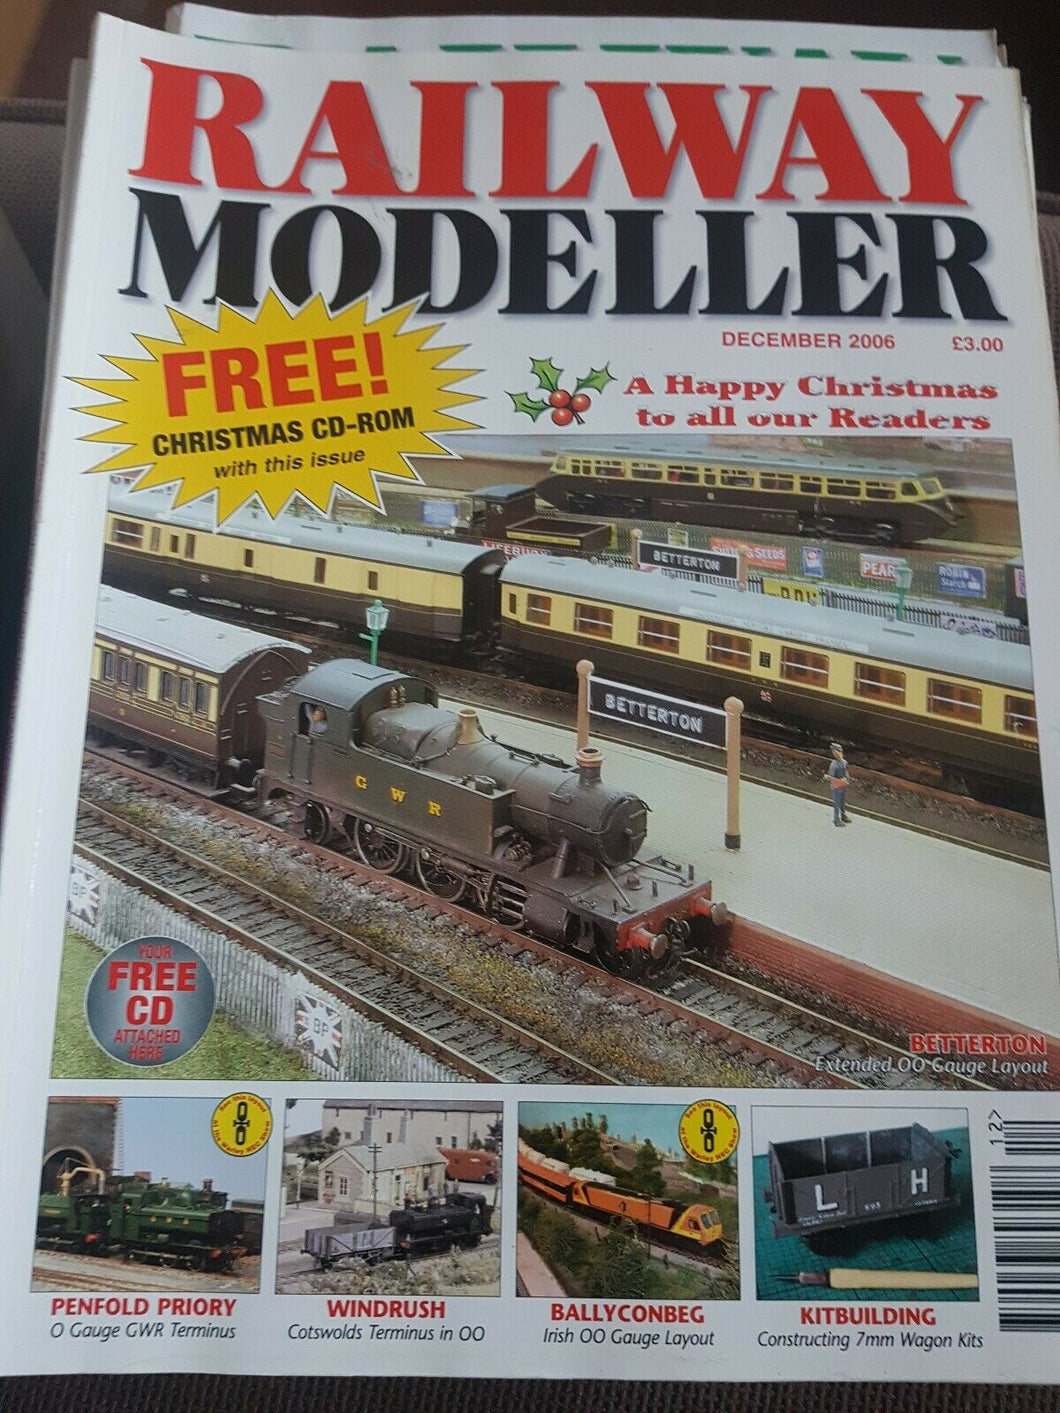 Railway modeller magazine December 2006